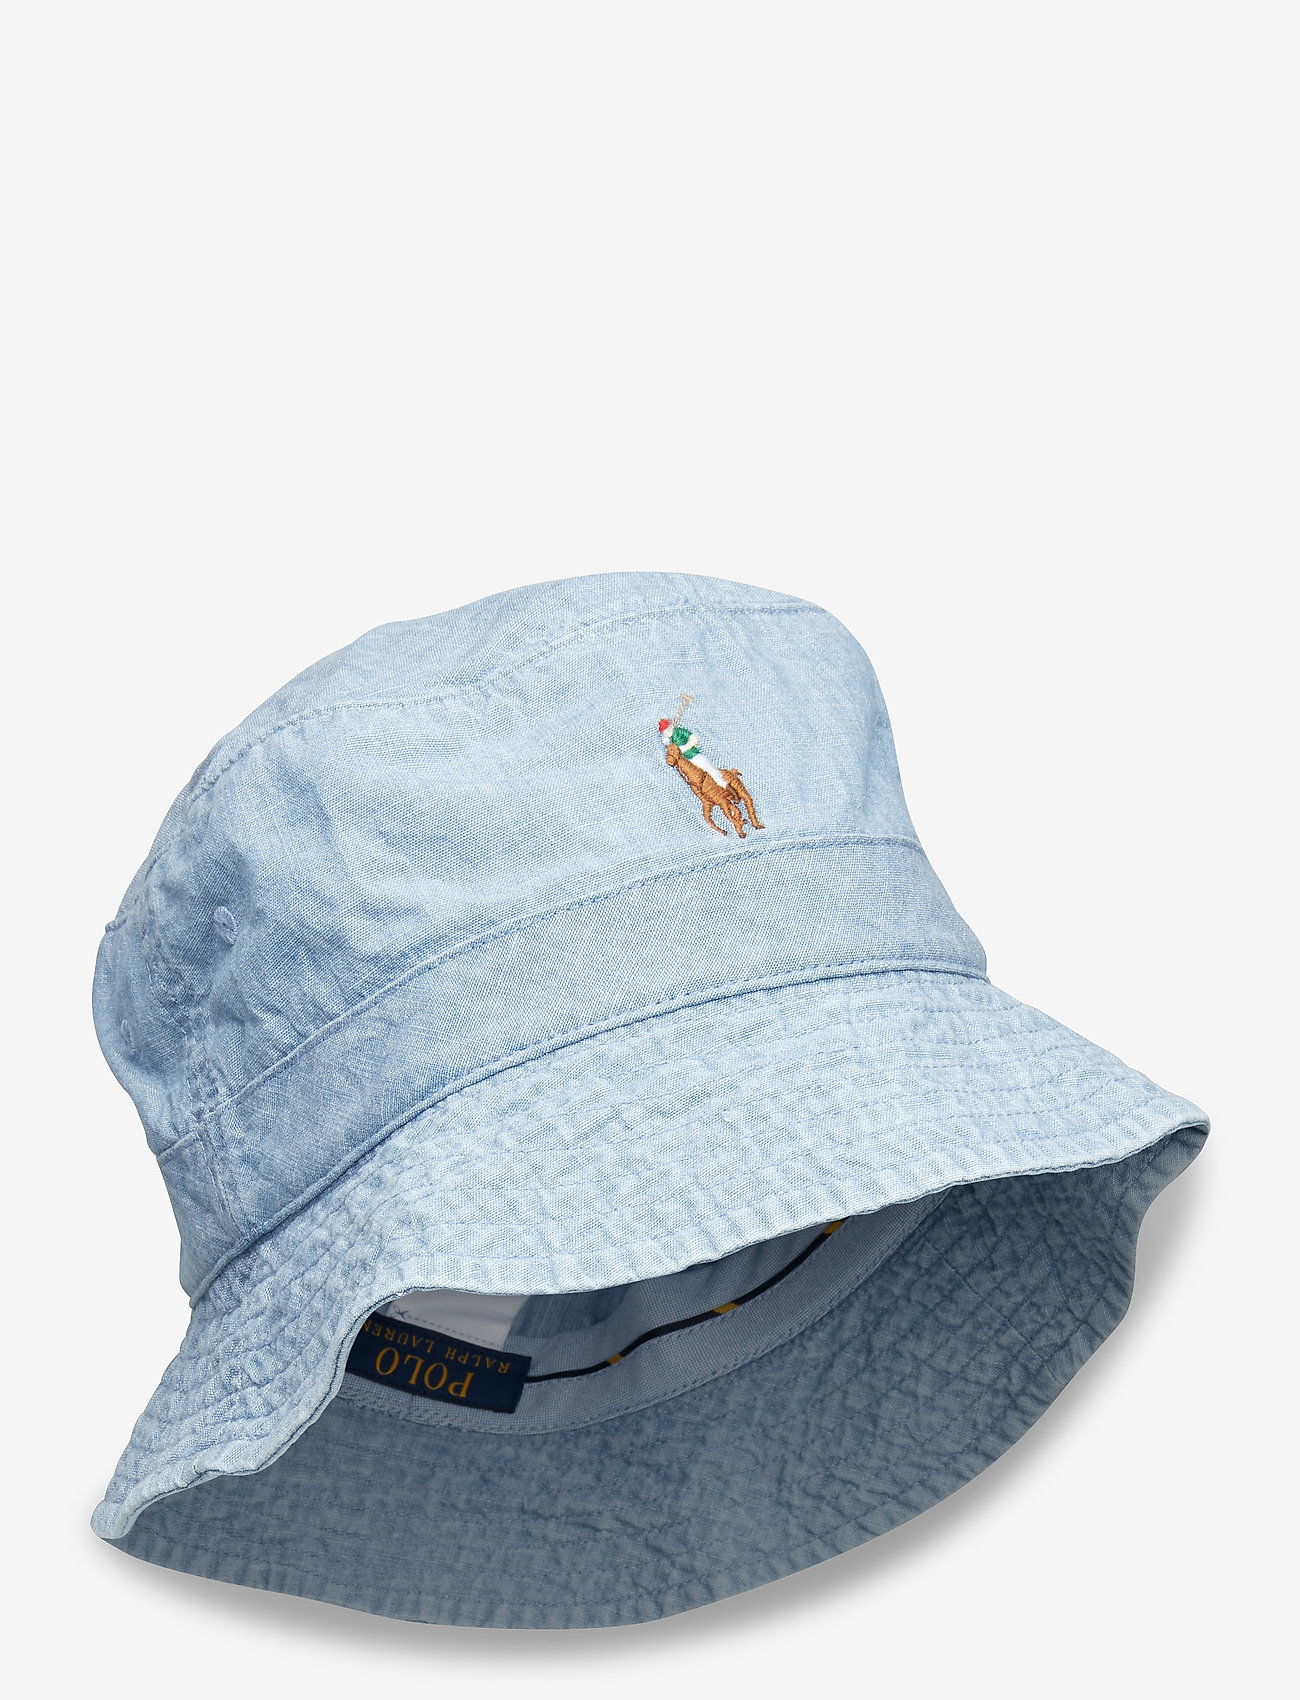 Chambray Bucket Hat (Blue Chambray) (29 